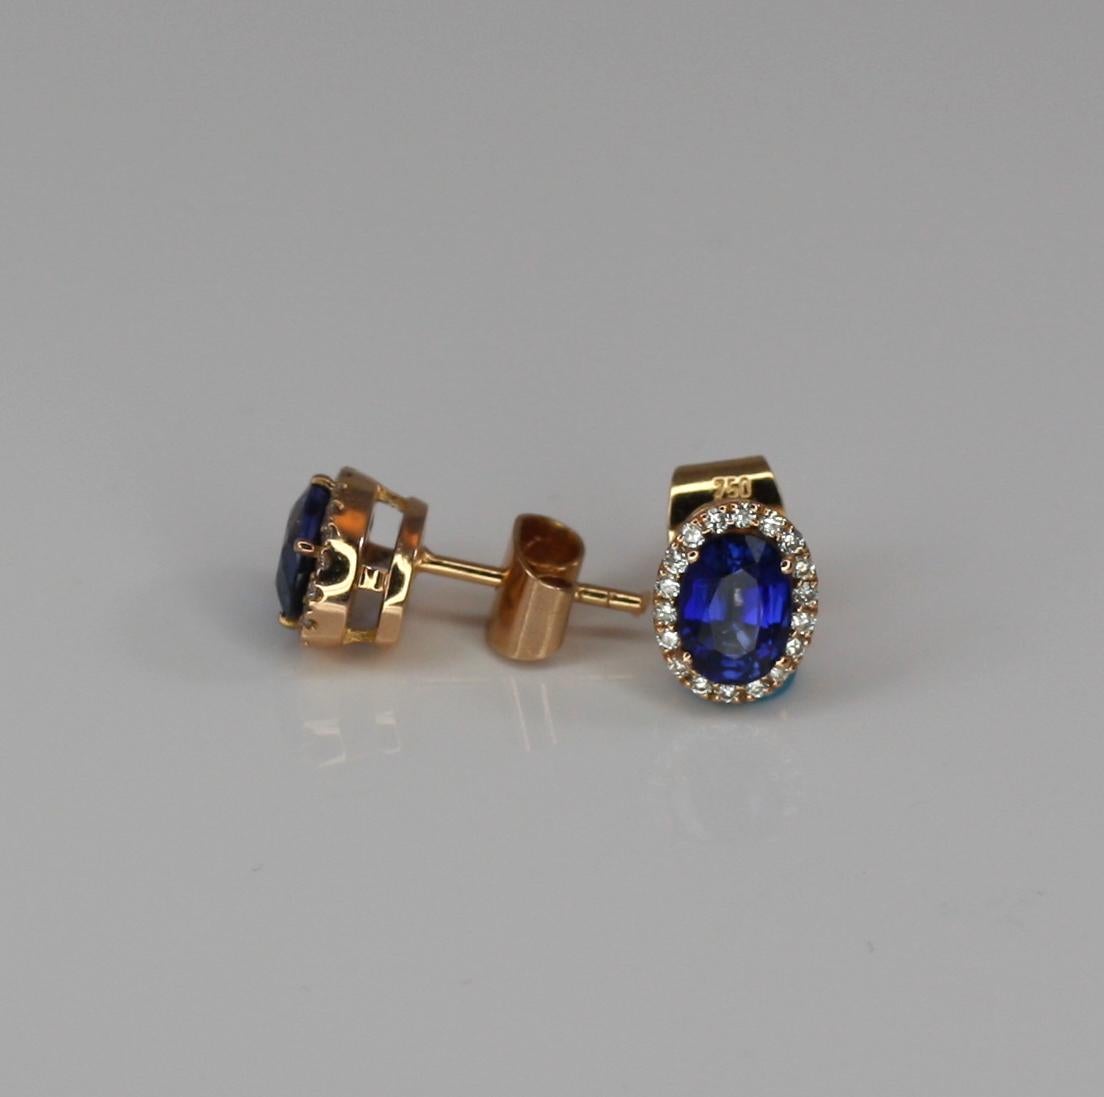 S.Georgios Designer-Ohrringe sind aus 18 Karat Roségold und handgefertigt. Die Ohrringe sind mit Diamanten im Brillantschliff mit einem Gesamtgewicht von 0,28 Karat und einem ovalen natürlichen blauen Saphir mit einem Gesamtgewicht von 2,18 Karat